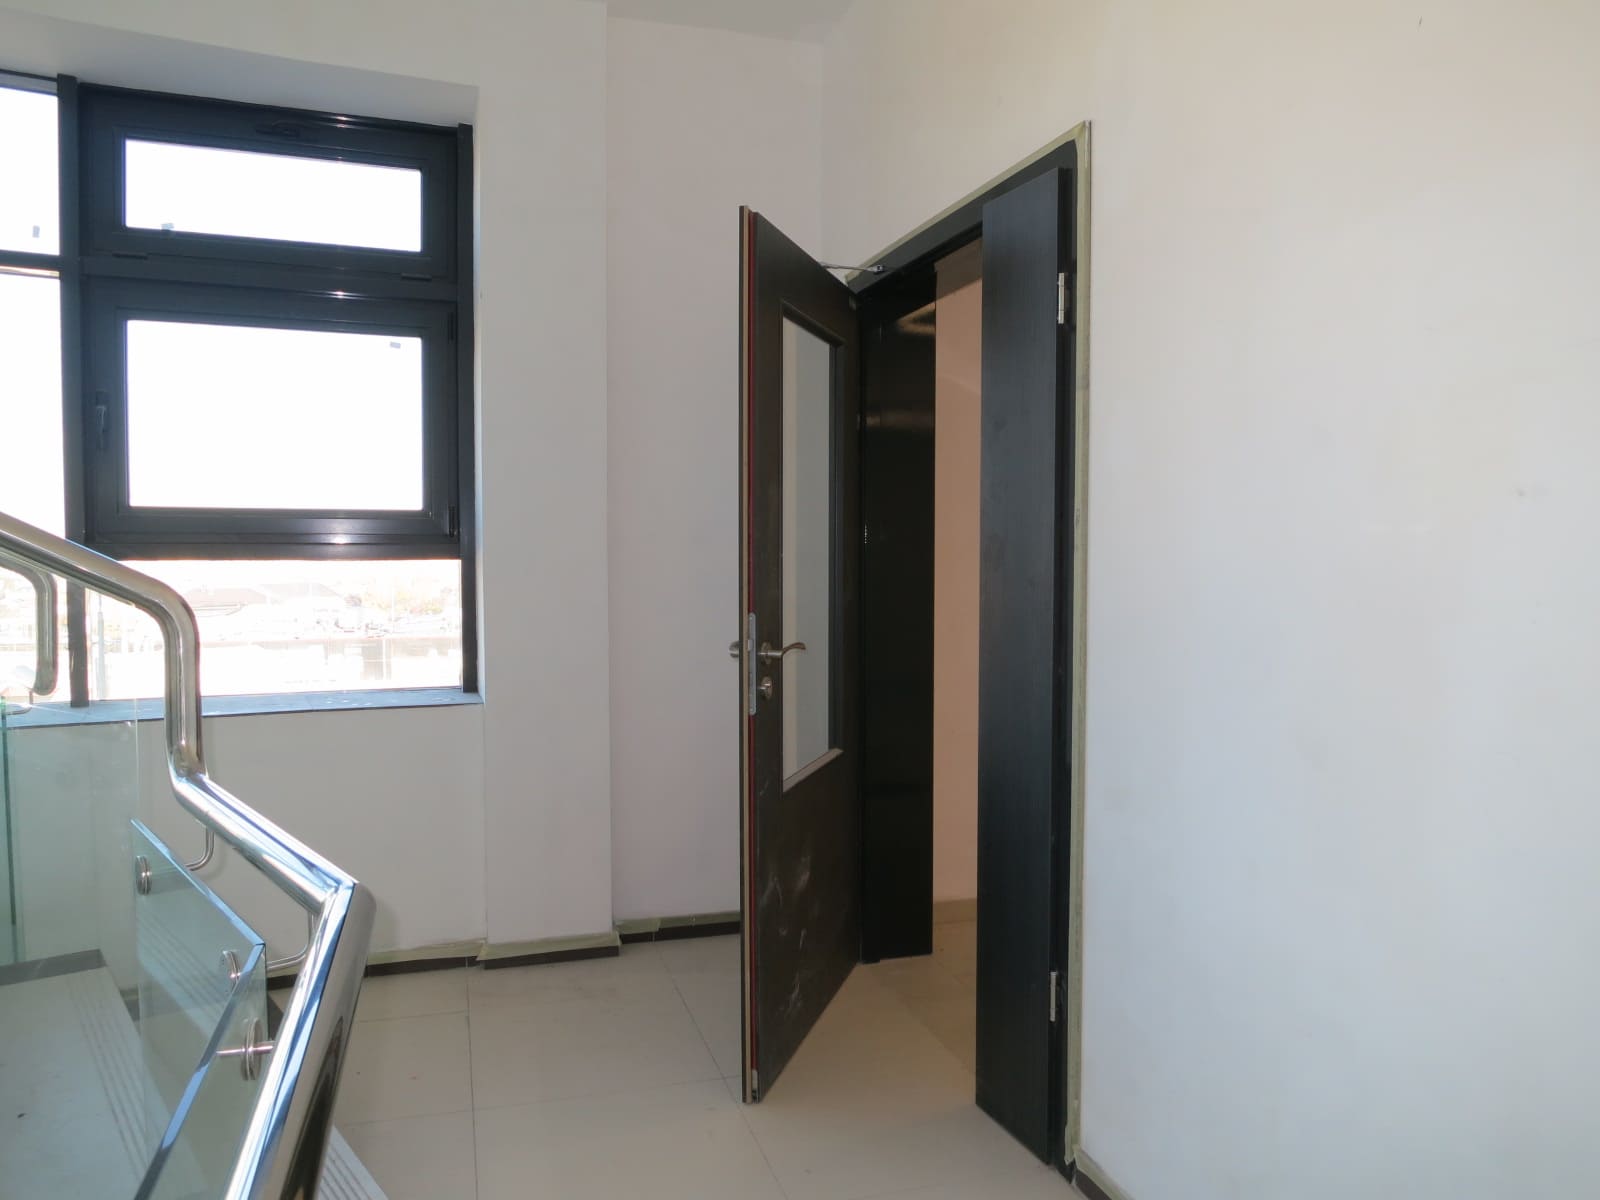 Двустворчатая дверь со стеклом, установленная в подъезде общежития перед лестницей